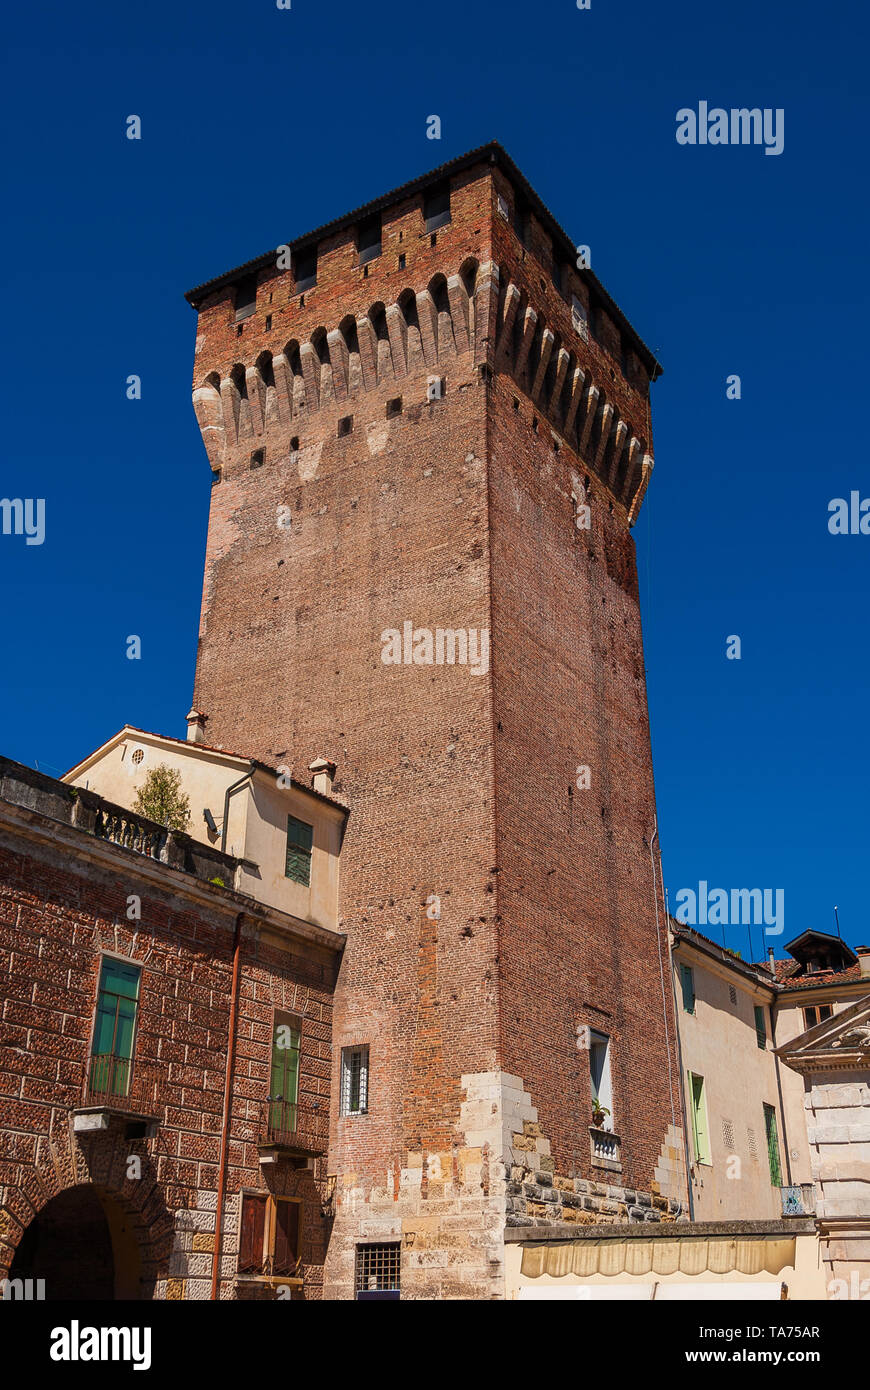 Porta Castello torre. Un imponente torre medievale su pareti di Vicenza cancello principale, l'ultima parte superstite di un antico castello del XIV secolo Foto Stock